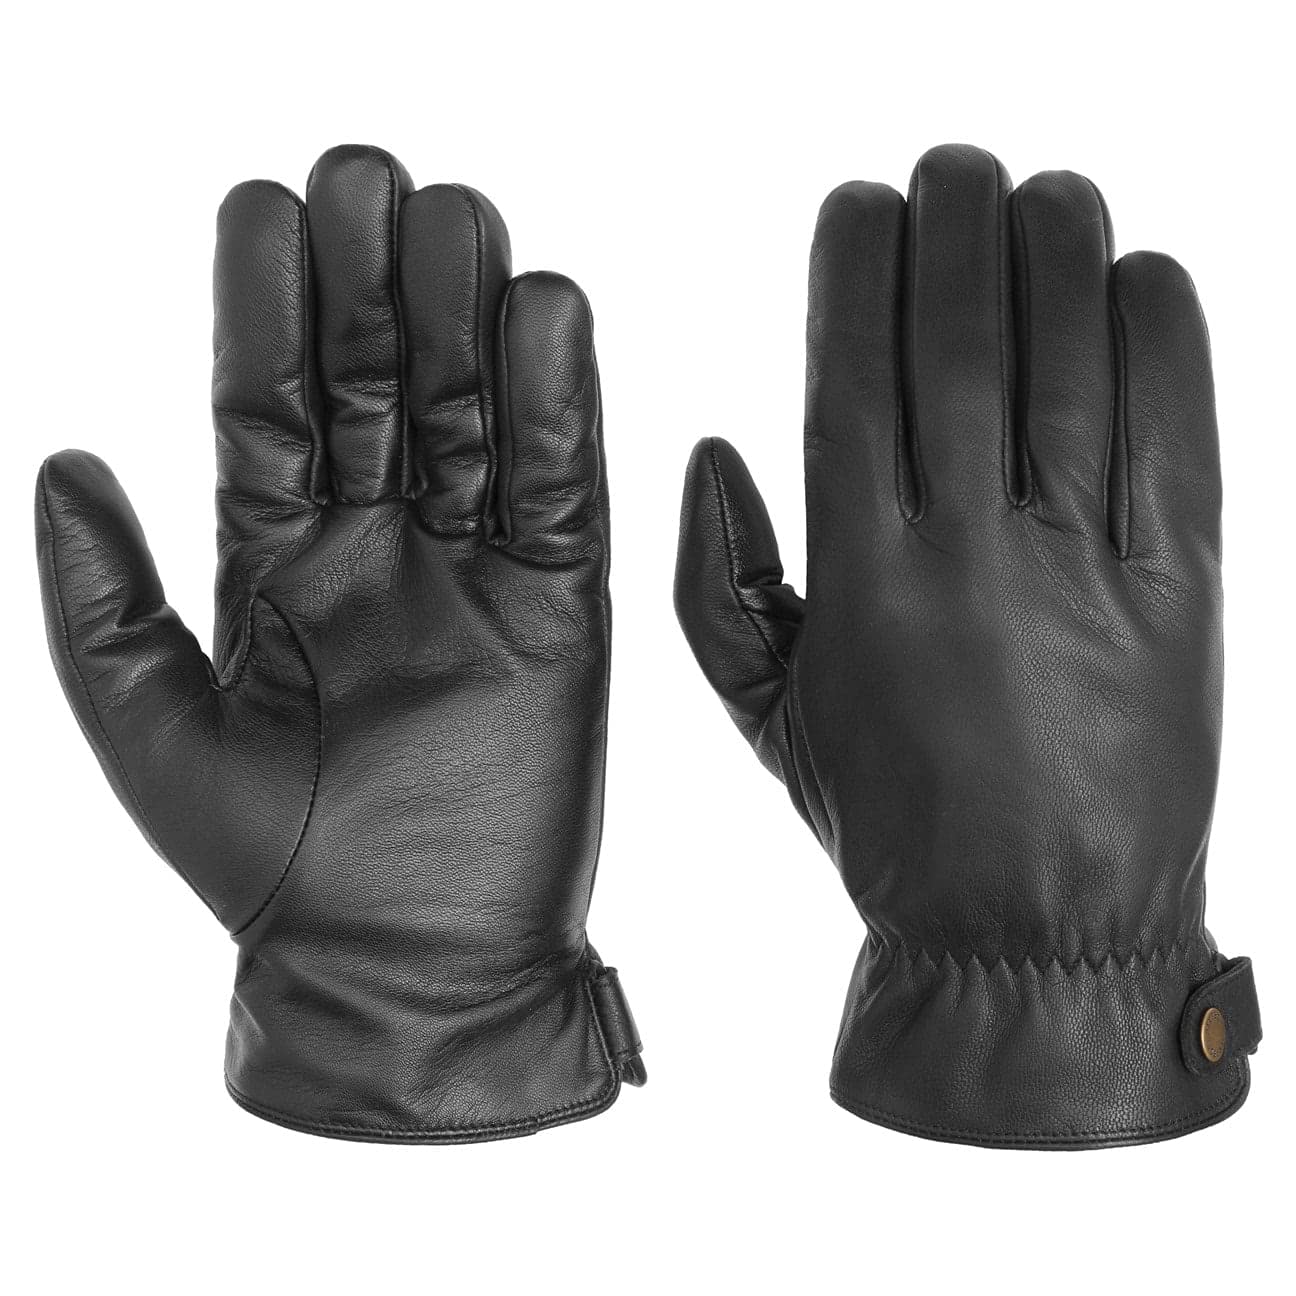 Stetson Conductive Lederhandschuhe Handschuhe Herrenhandschuhe Fingerhandschuhe (9 HS - schwarz)